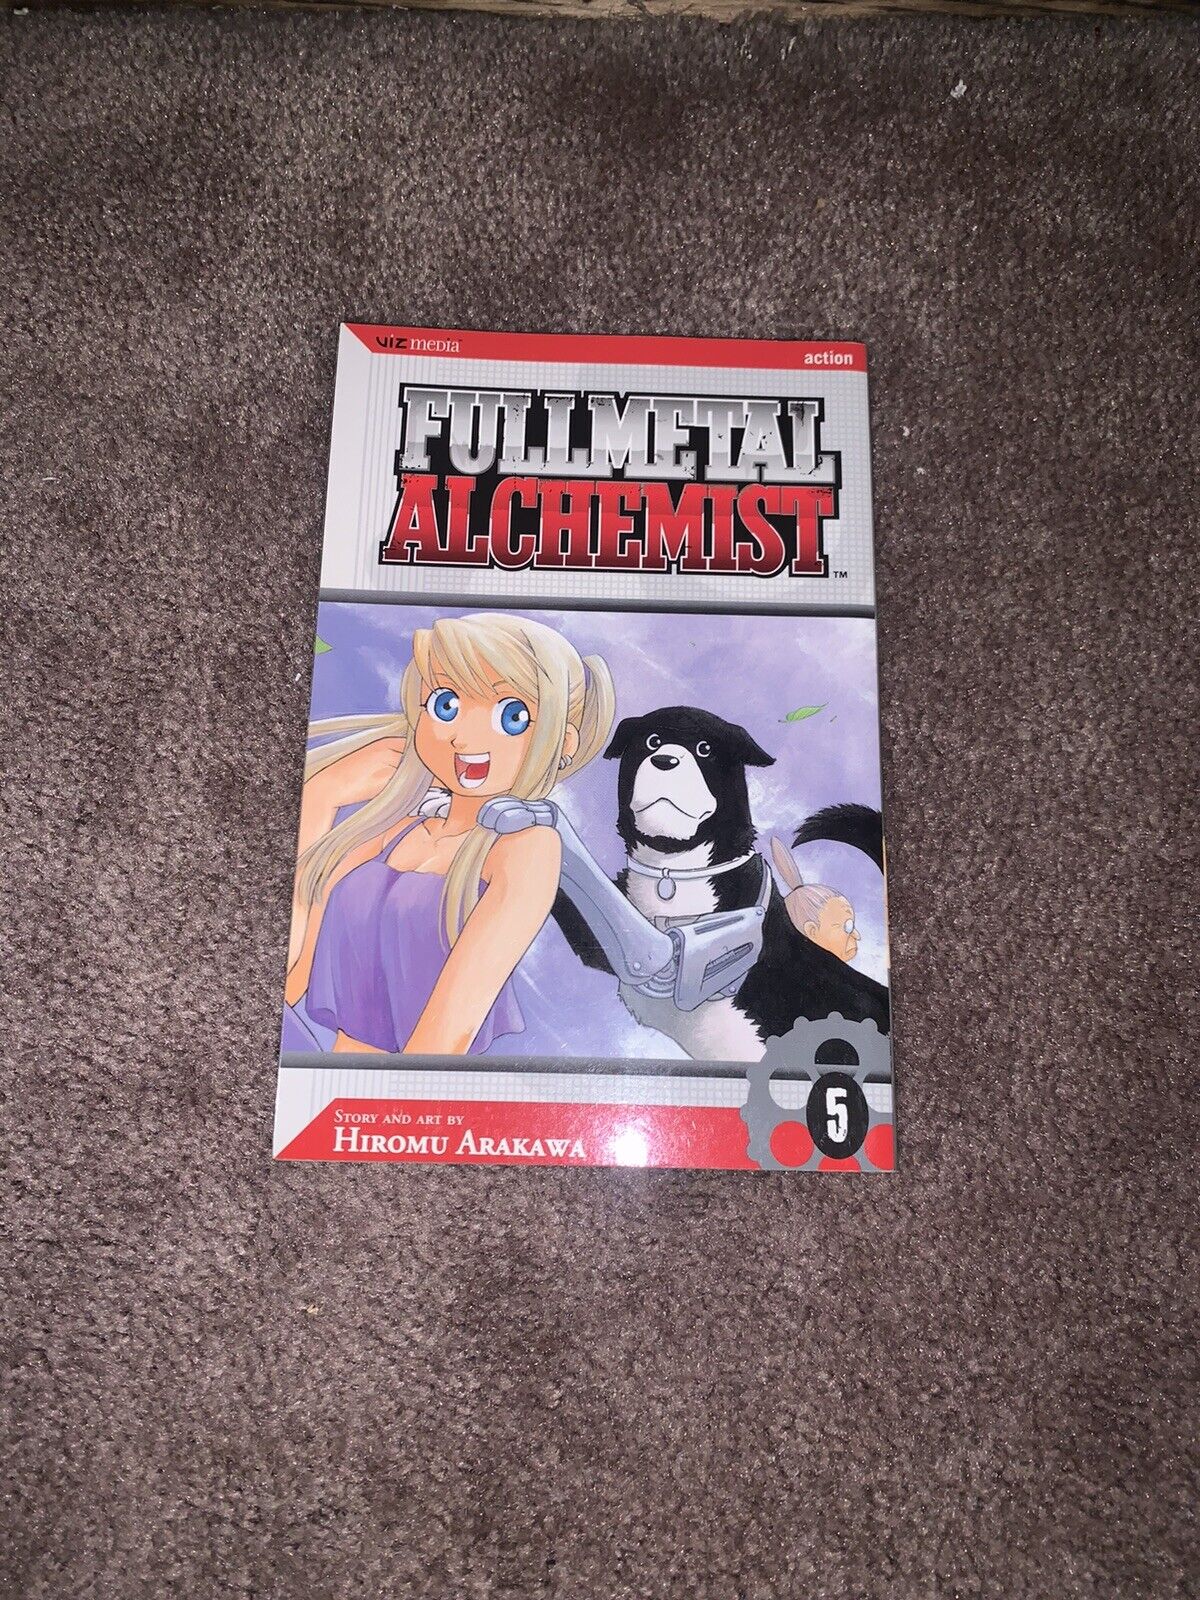 Fullmetal Alchemist Ser.: Fullmetal Alchemist, Vol. 5 by Hiromu Arakawa (2006, T